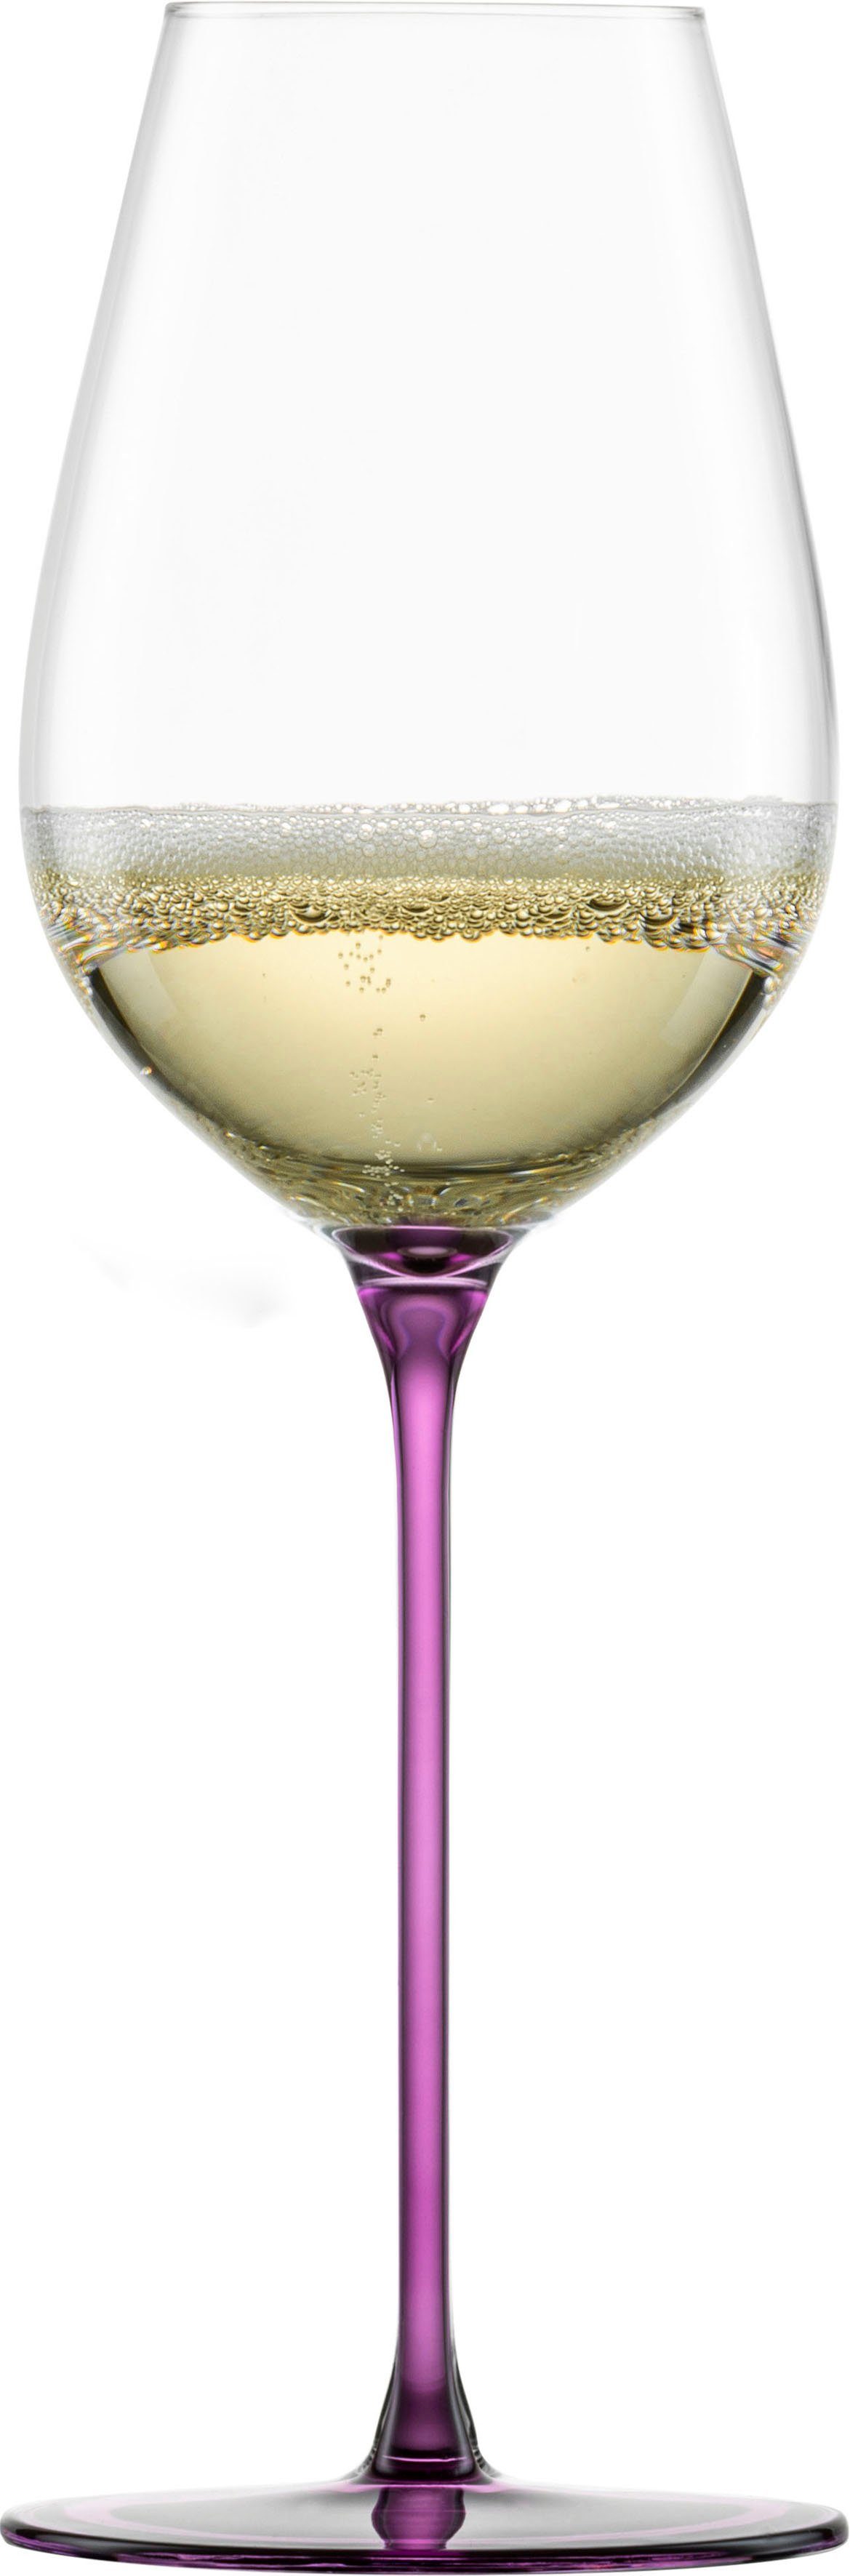 Eisch Champagnerglas INSPIRE SENSISPLUS, Kristallglas, die Veredelung der Stiele erfolgt in Handarbeit, 400 ml, 2-teilig